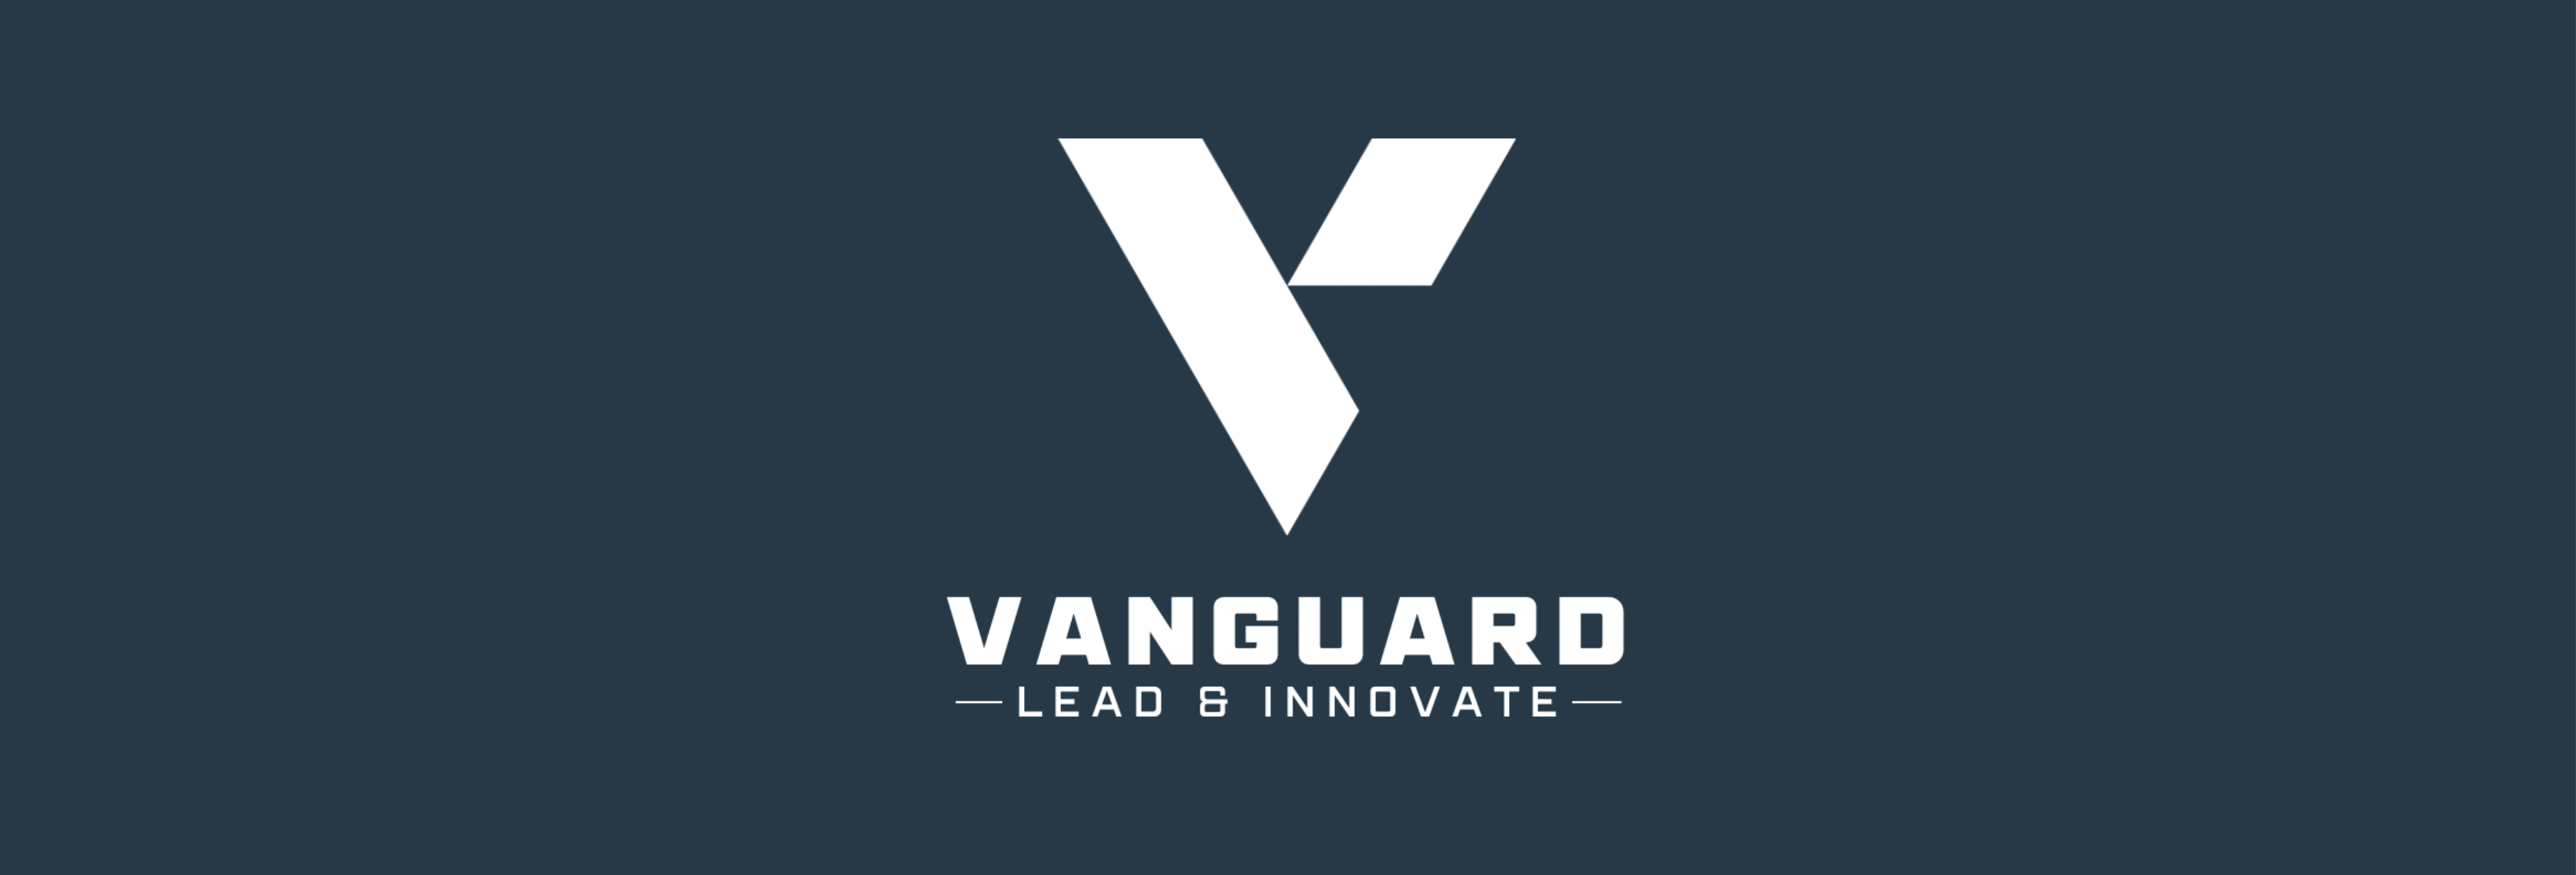 VANGUARD -Lead & Innovate- Ein Magazin revolutioniert Digitalisierung und Leadership